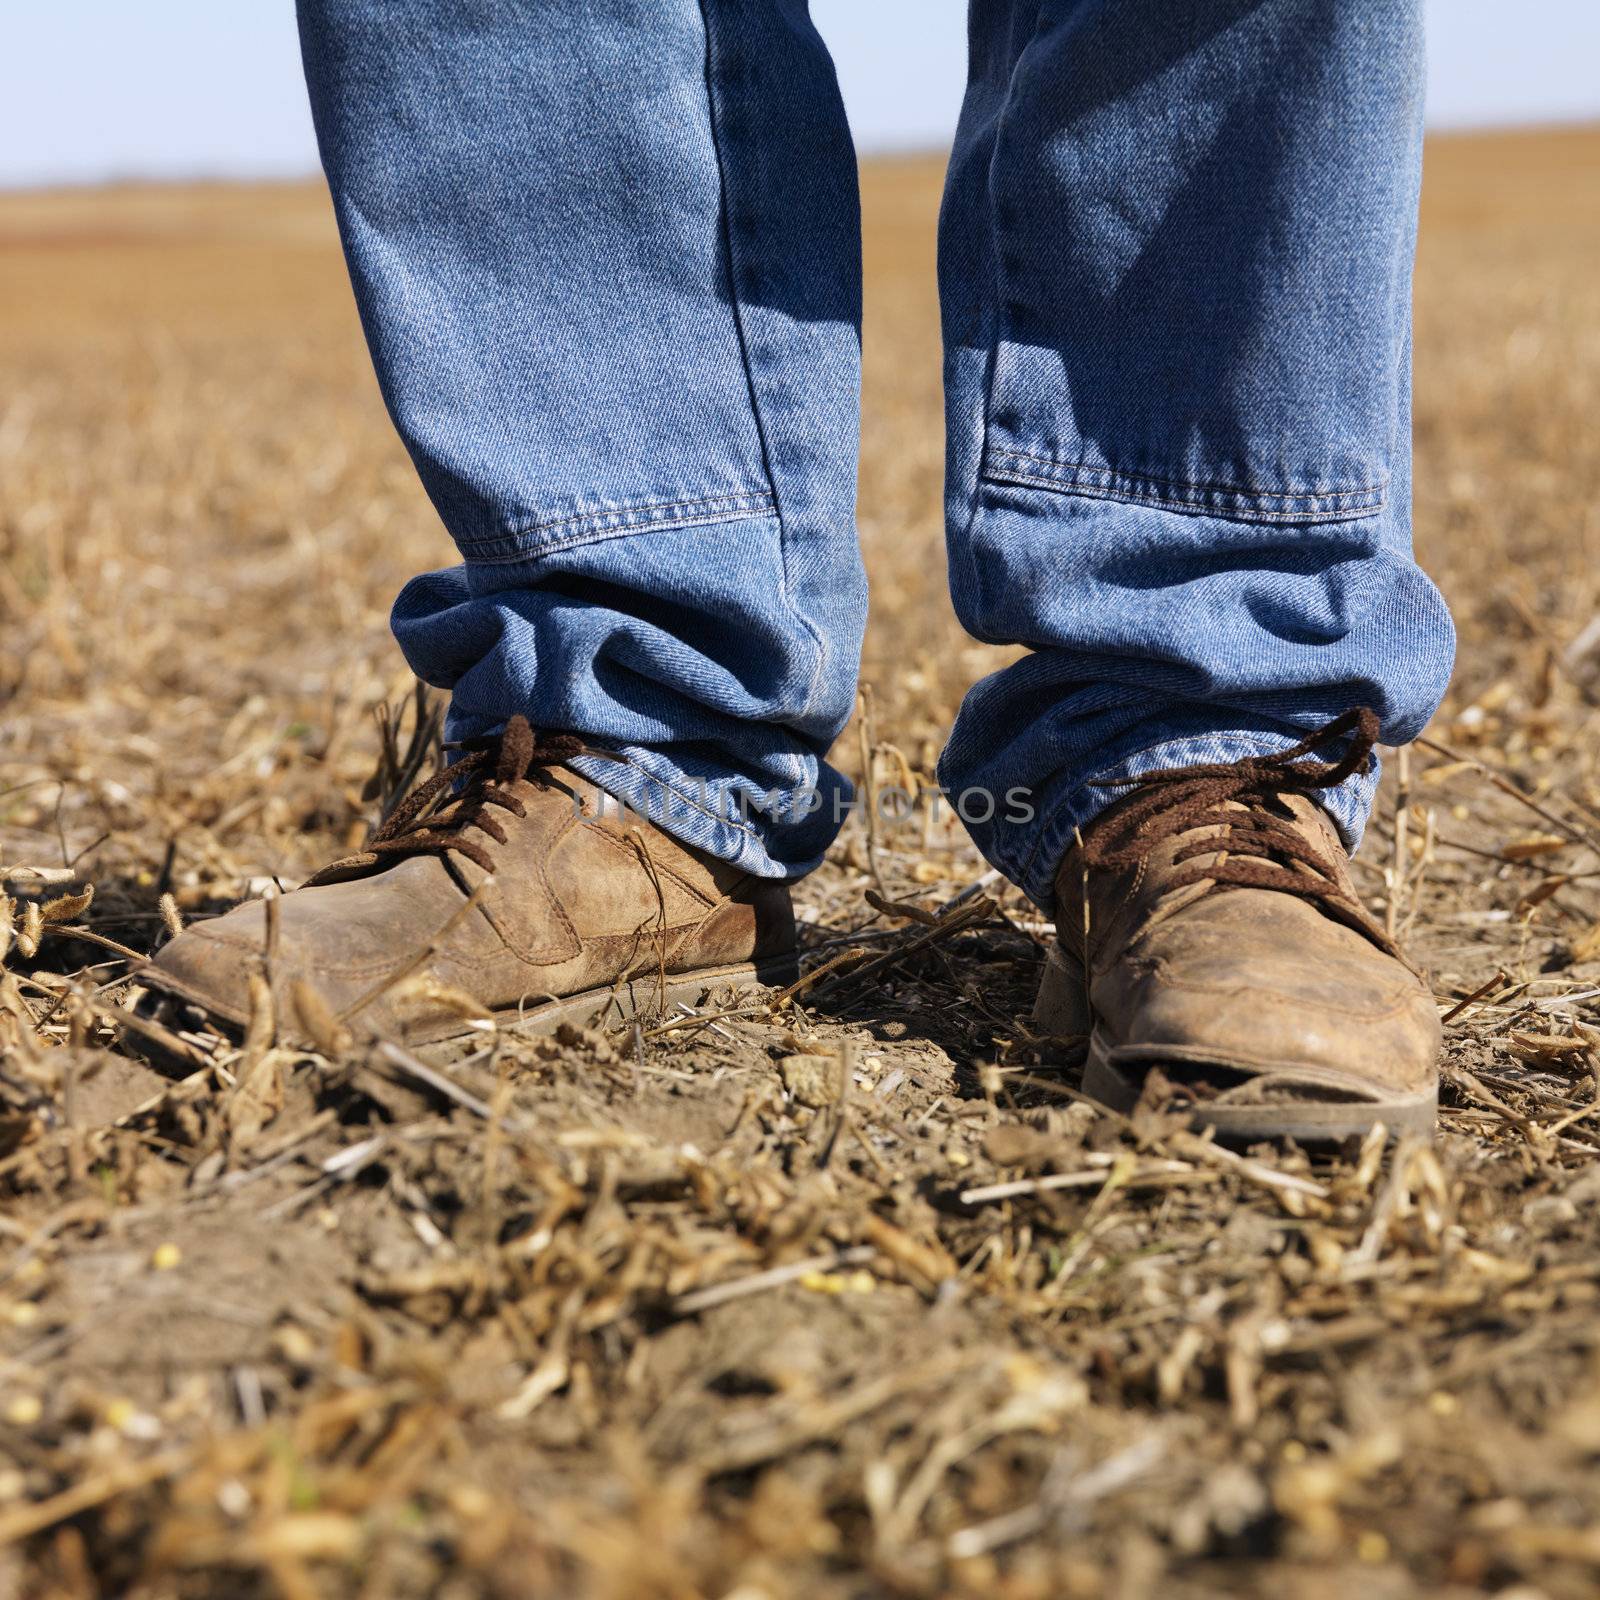 Feet shot of man wearing workboots standing in soybean field.